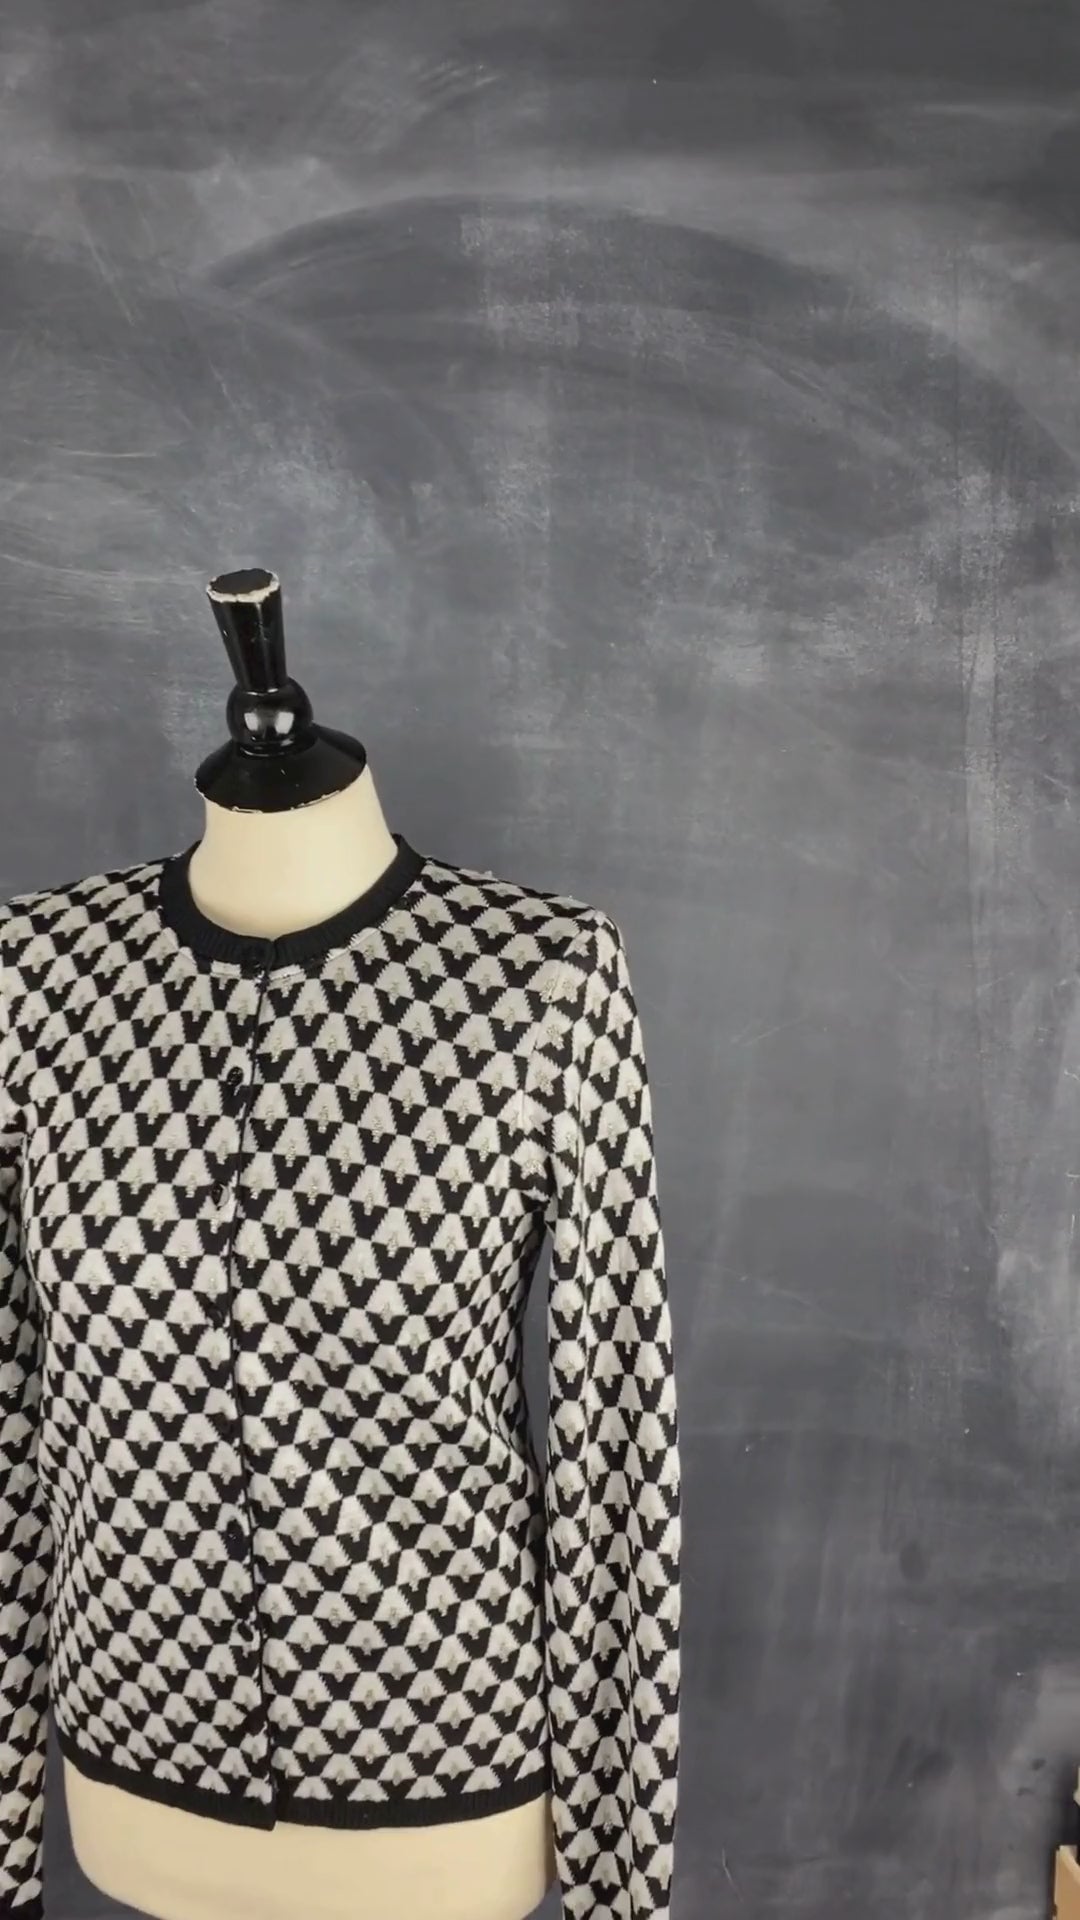 Cardigan tricot motif geo Icône, taille small. Vue de la vidéo qui présente tous les détails de la veste.